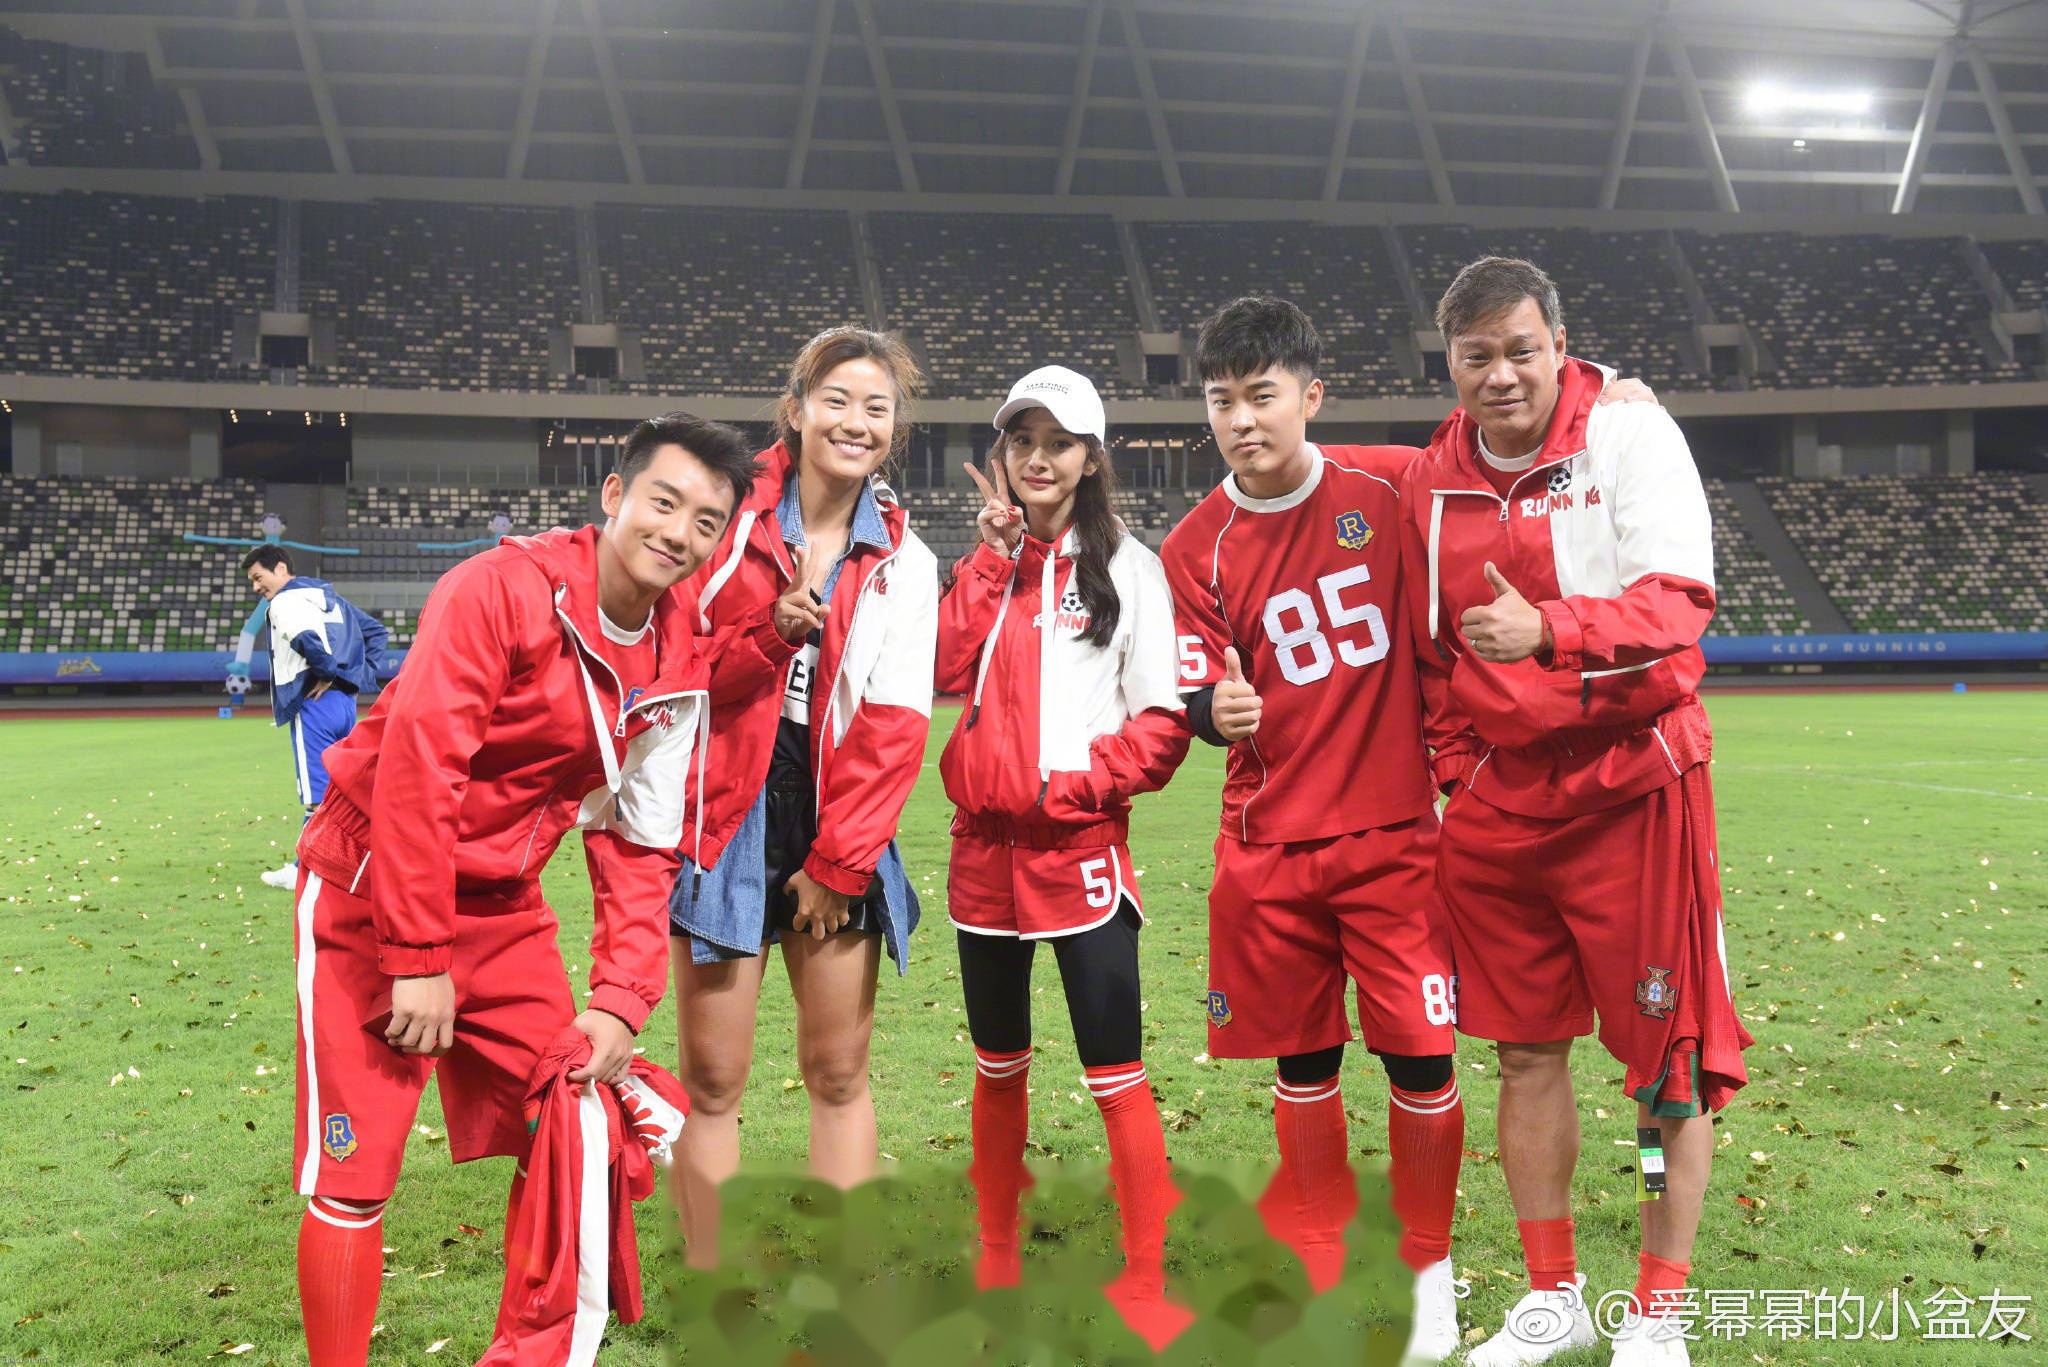 杨幂踢足球,身穿一套红色运动服,活力无极限,青春洋溢,是个元气满满的